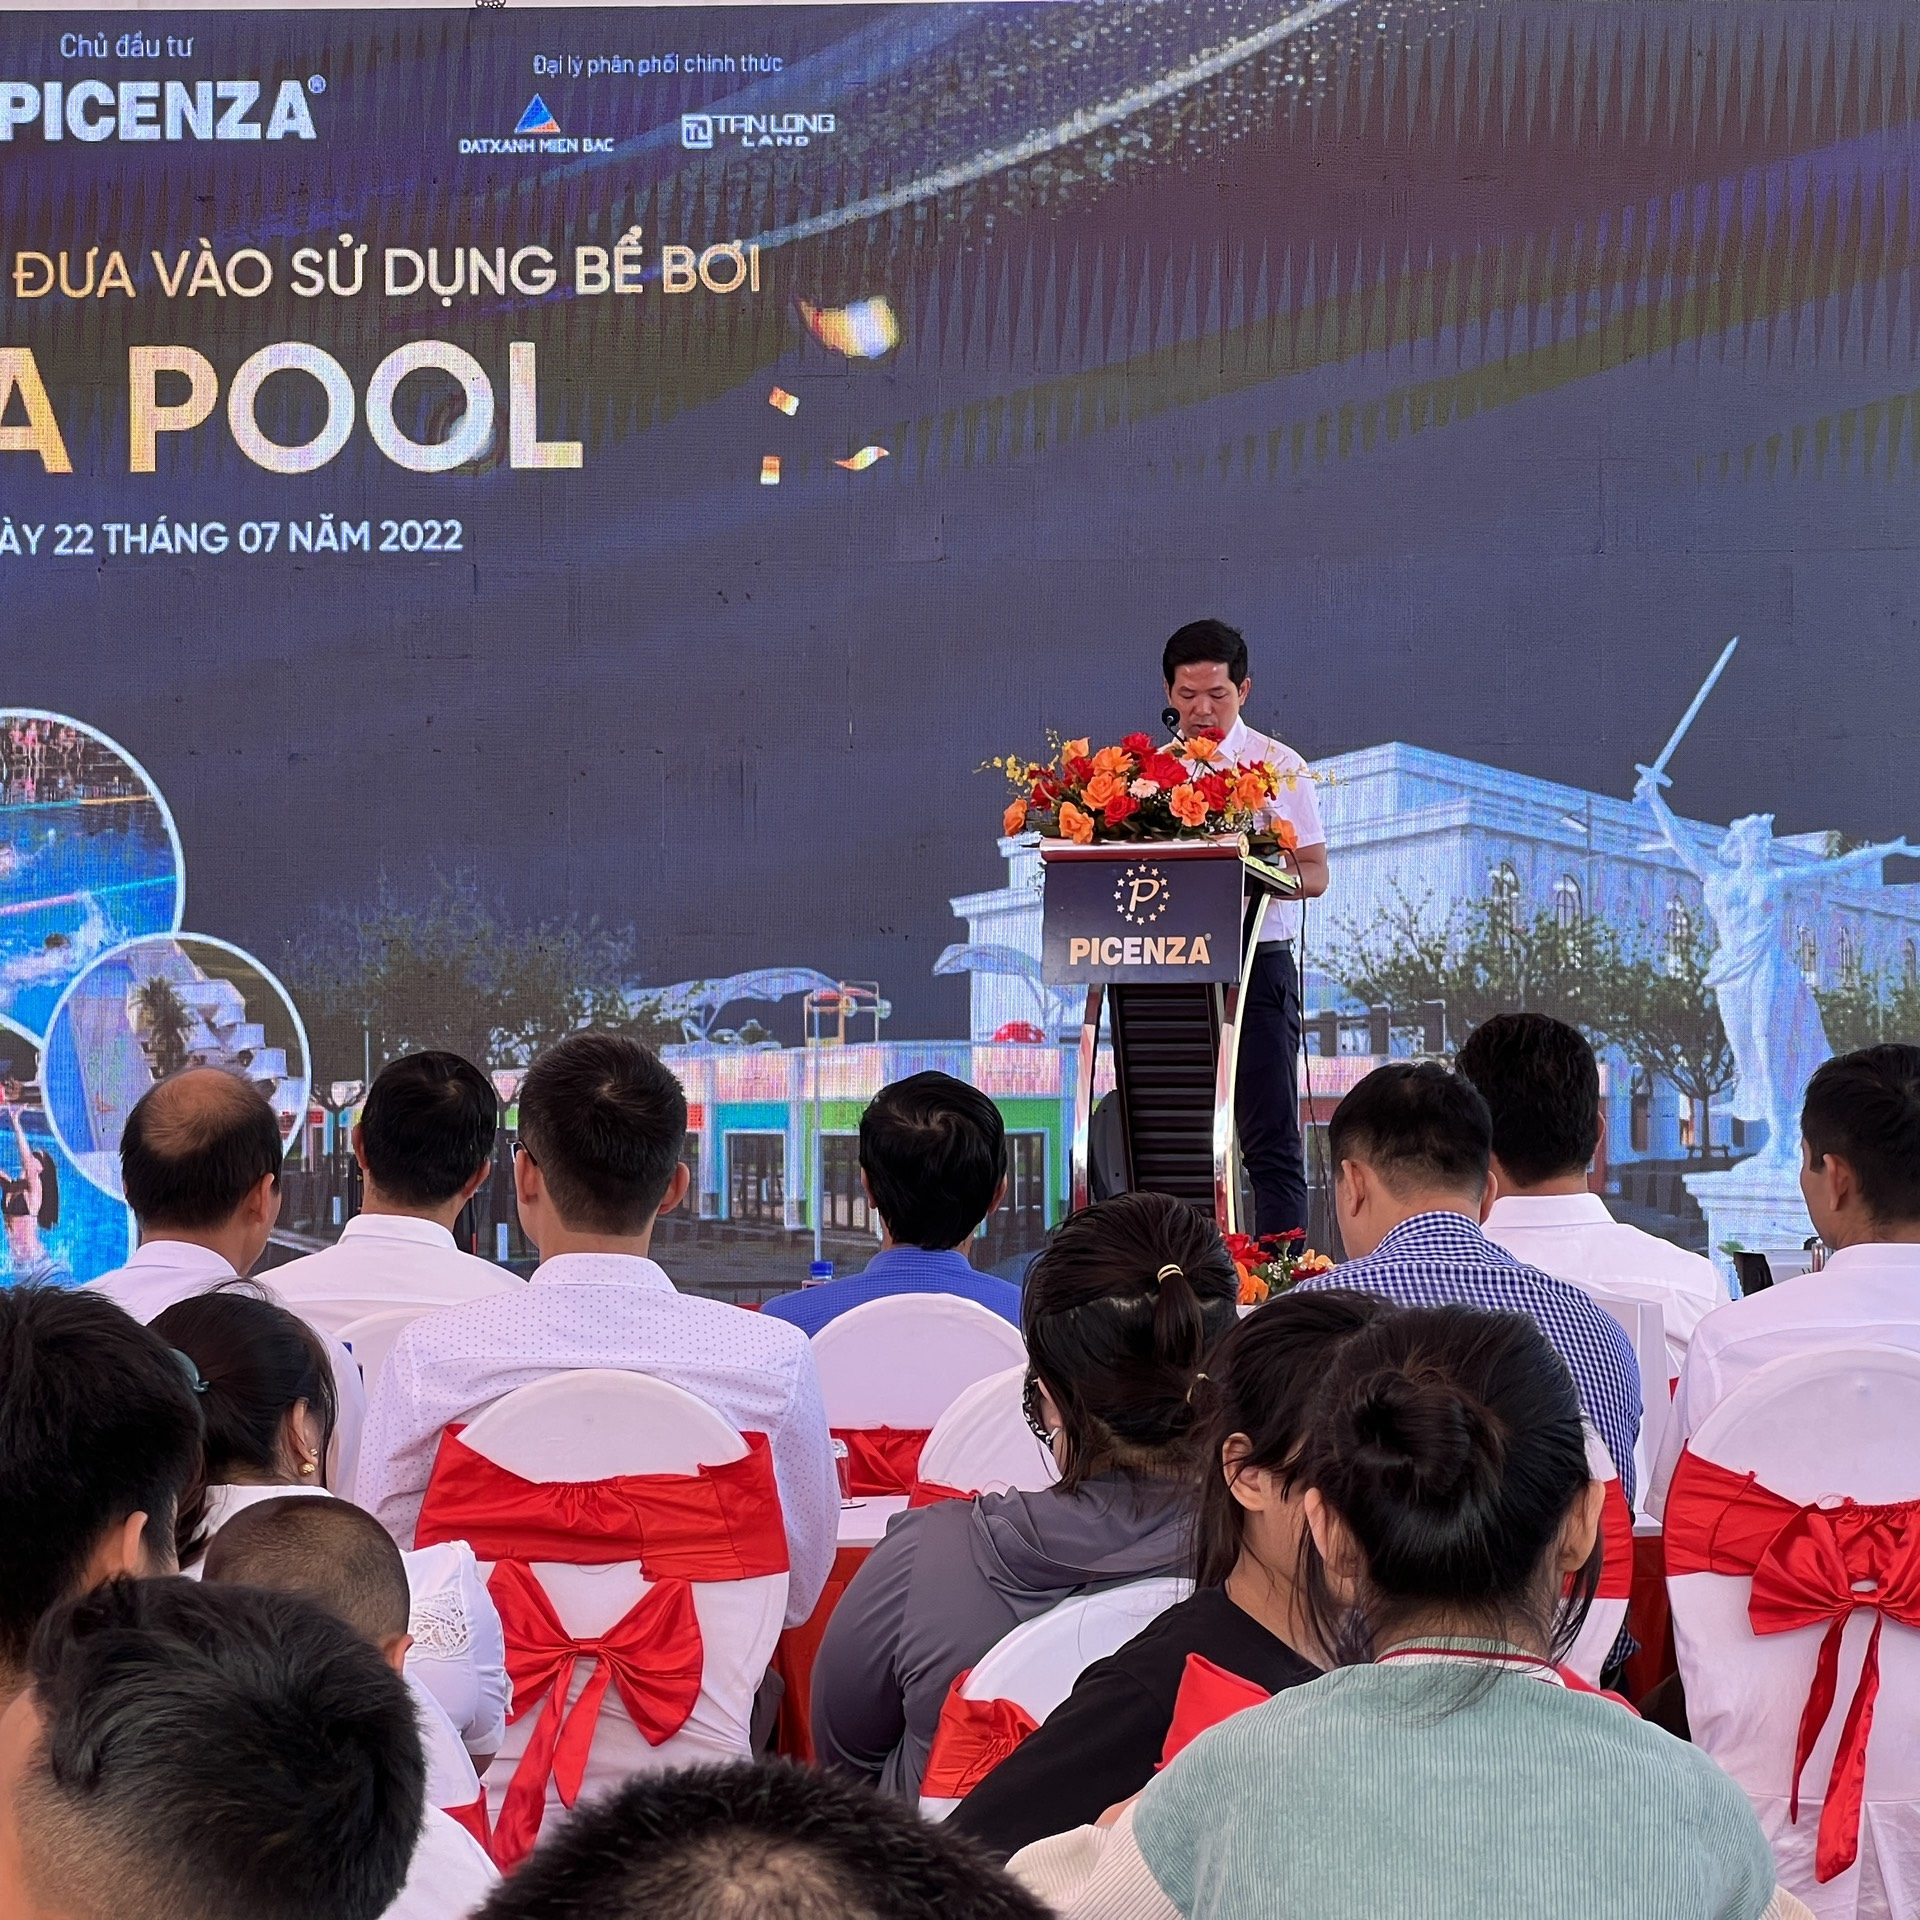 Chính thức khánh thành bể bơi tiêu chuẩn quốc gia đầu tiên tại Sơn La – Aqua Pool